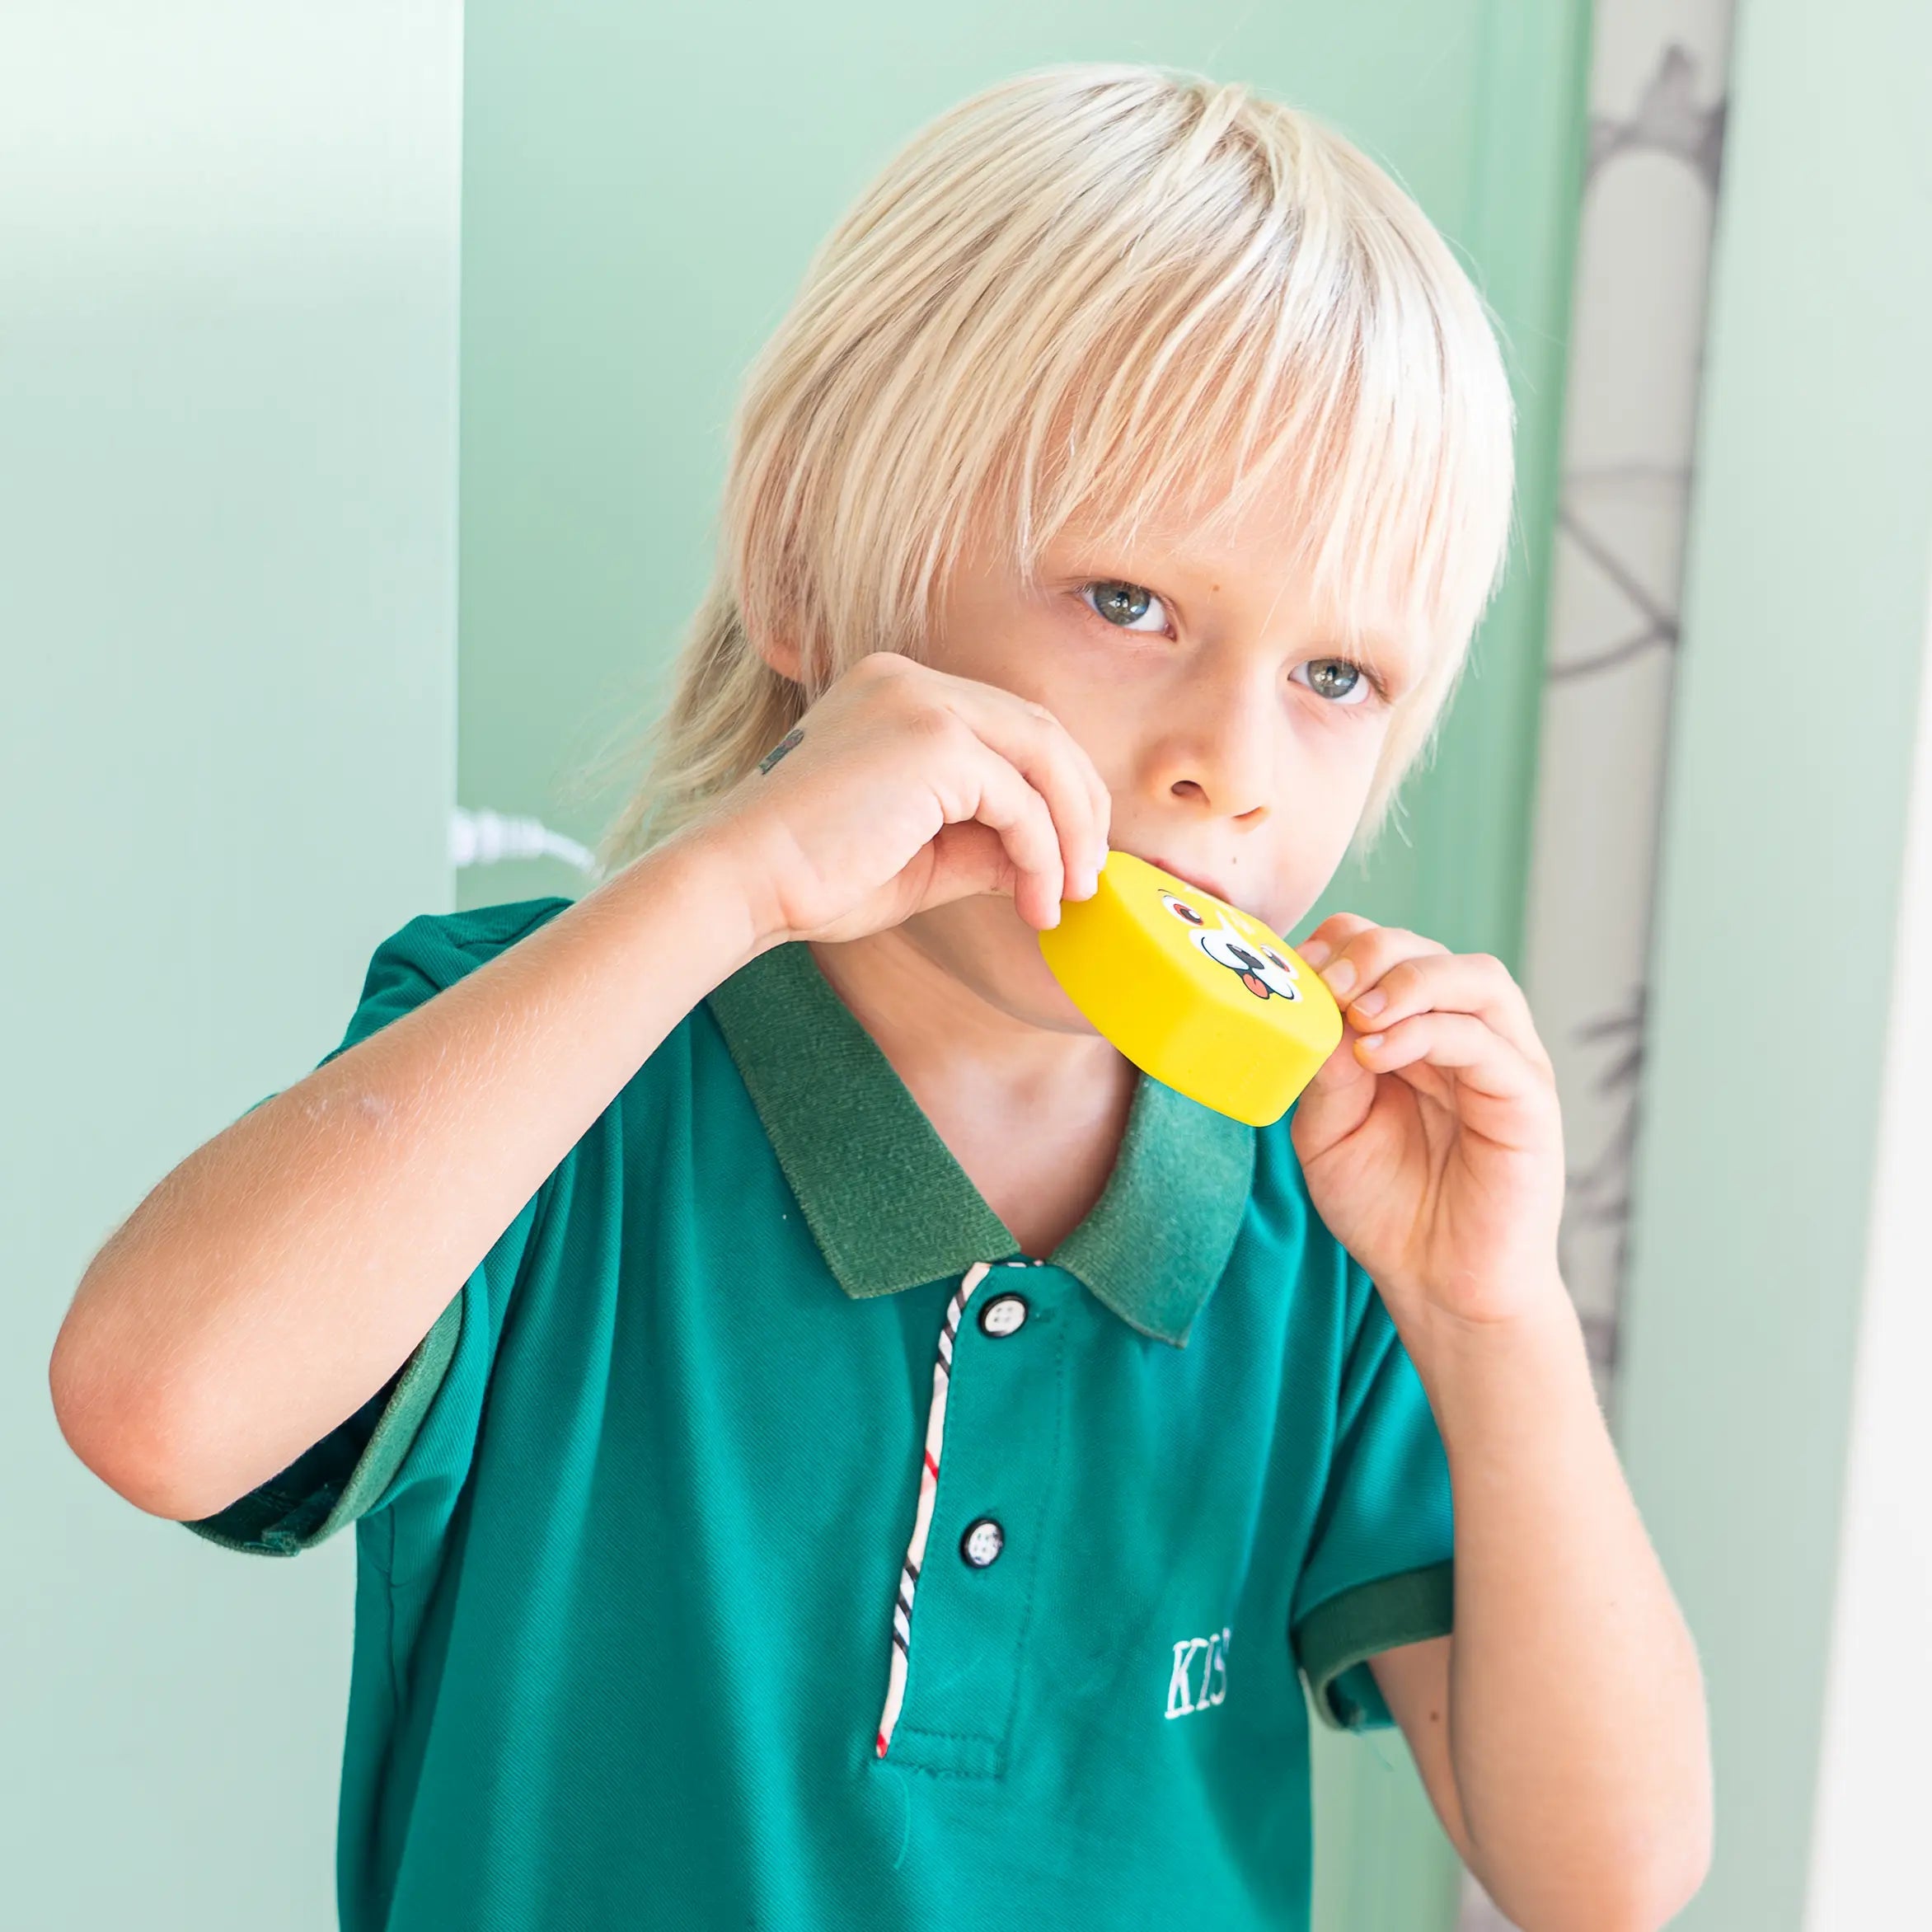 KiddoBrosse - Une nouvelle et efficace manière de se brosser les dents